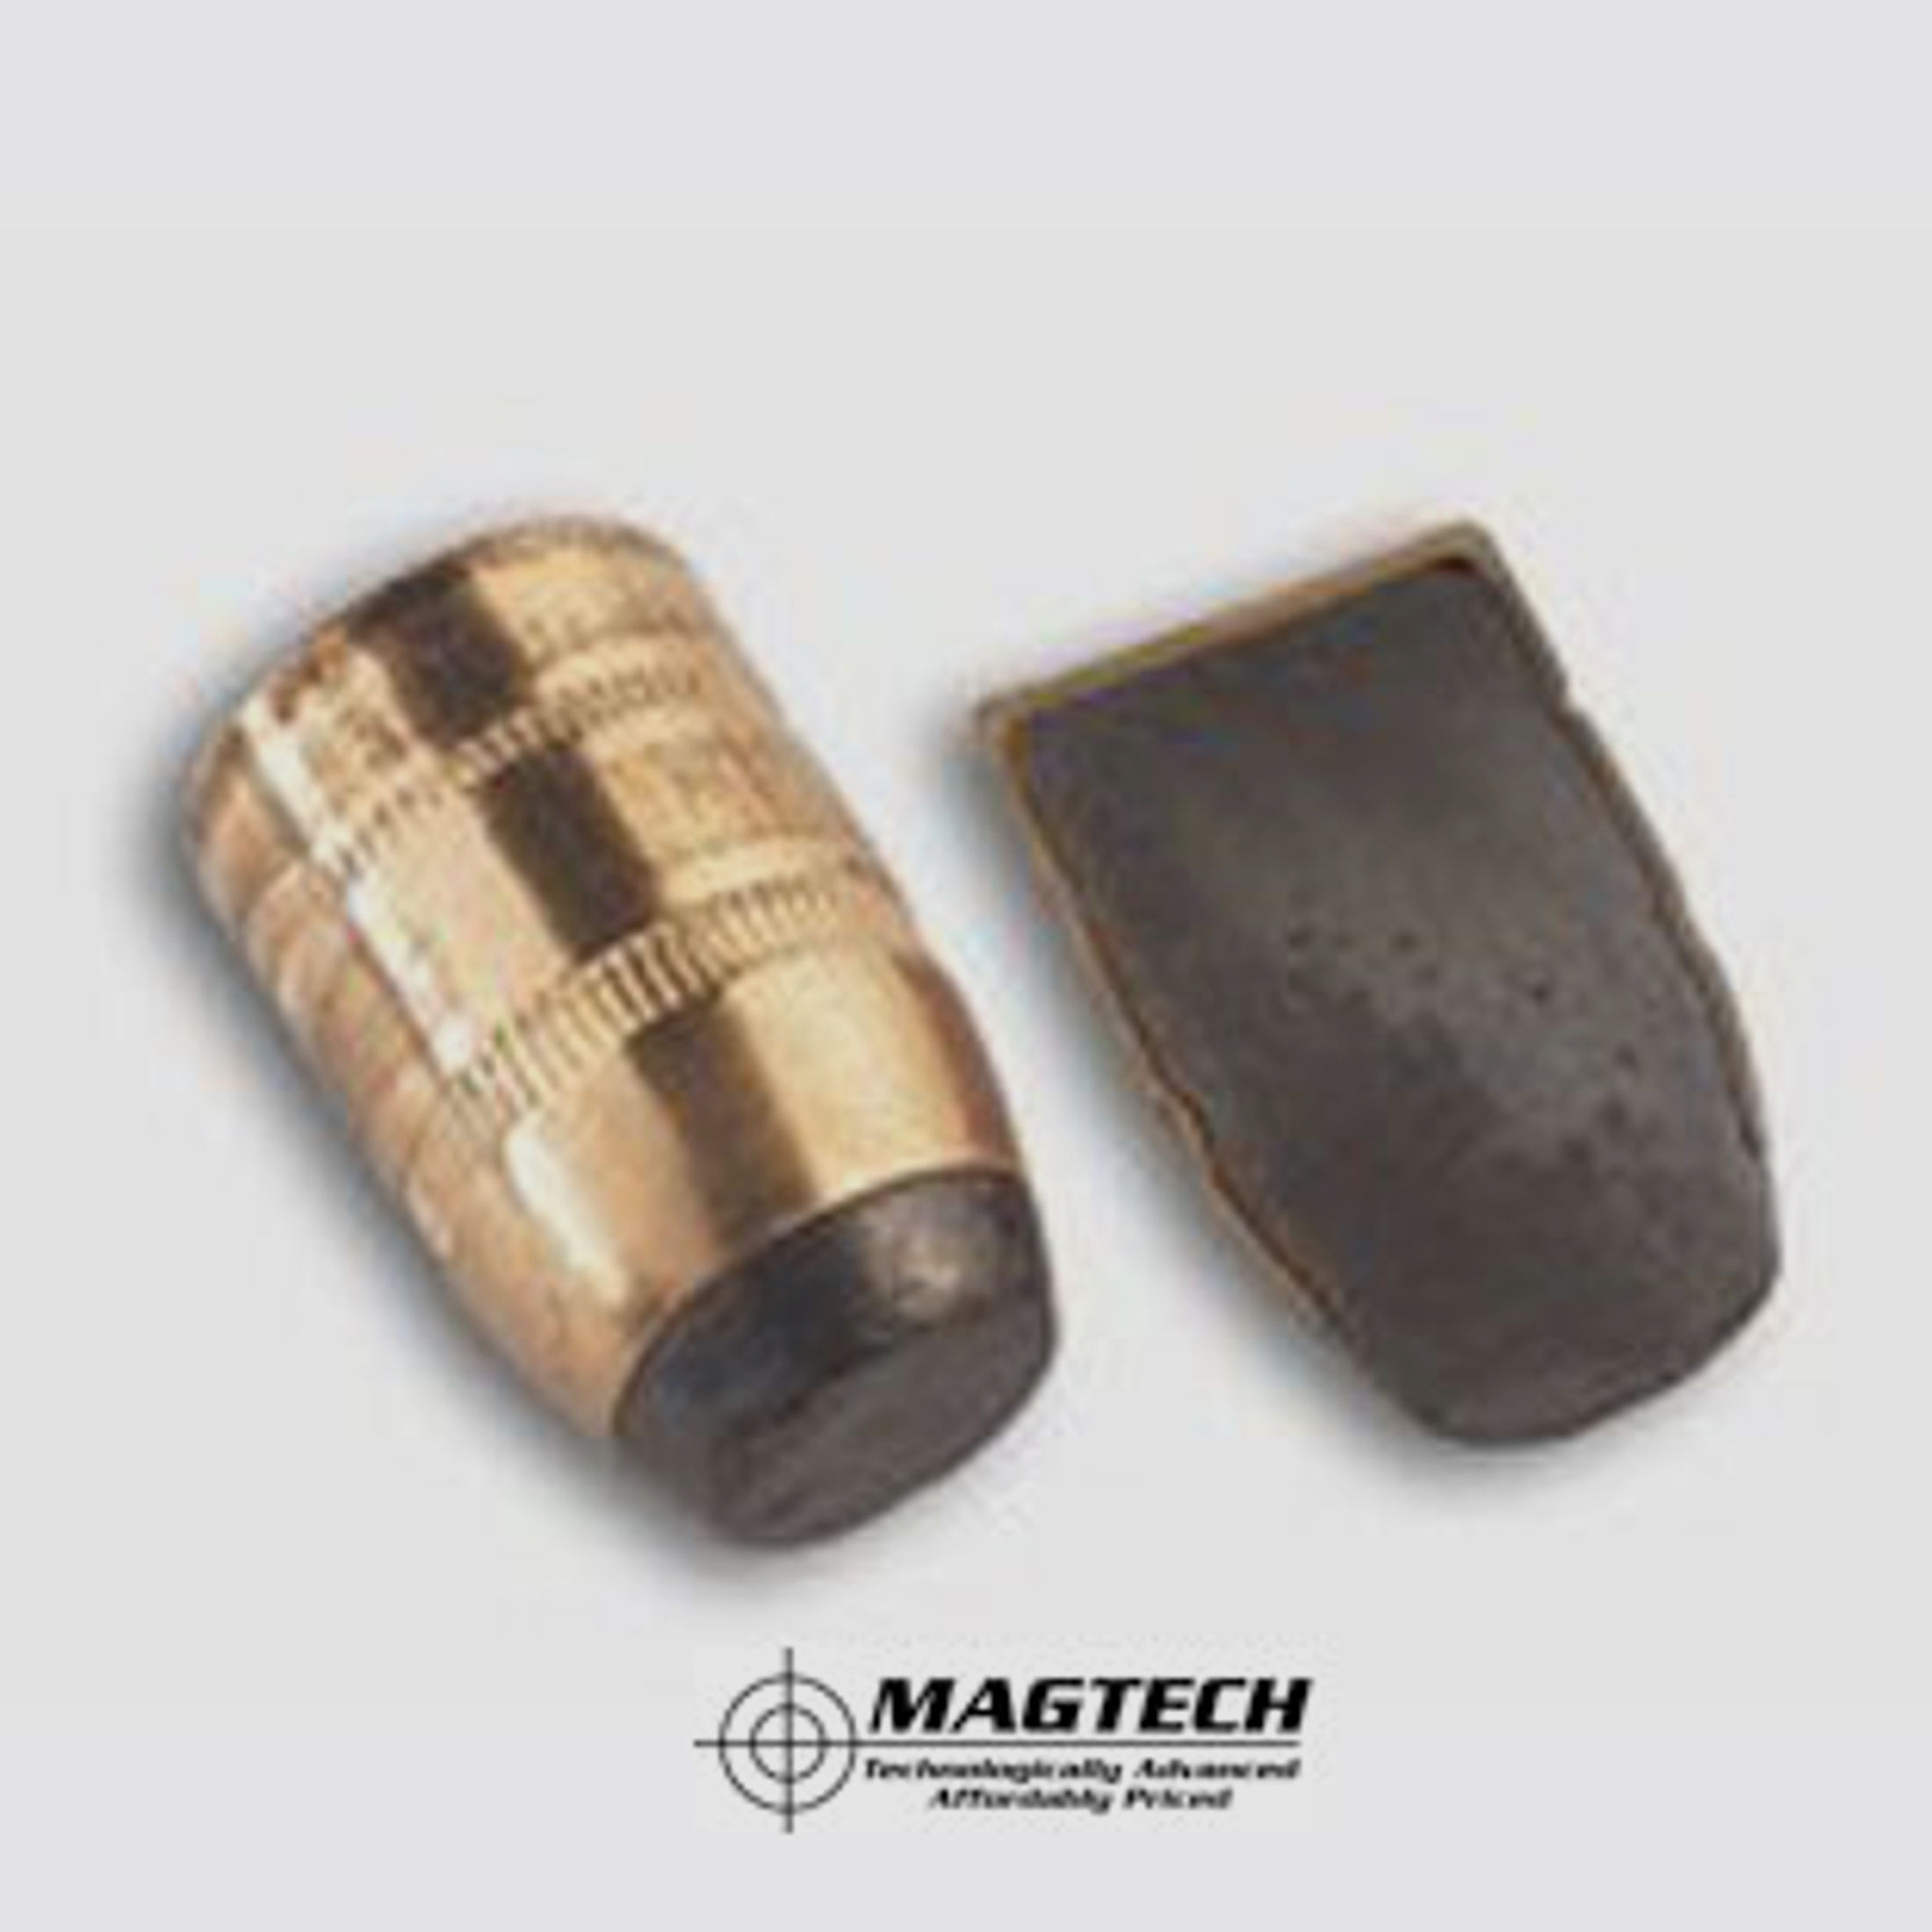 Magtech .38 Special +P 125GR SJSP 50 Patronen